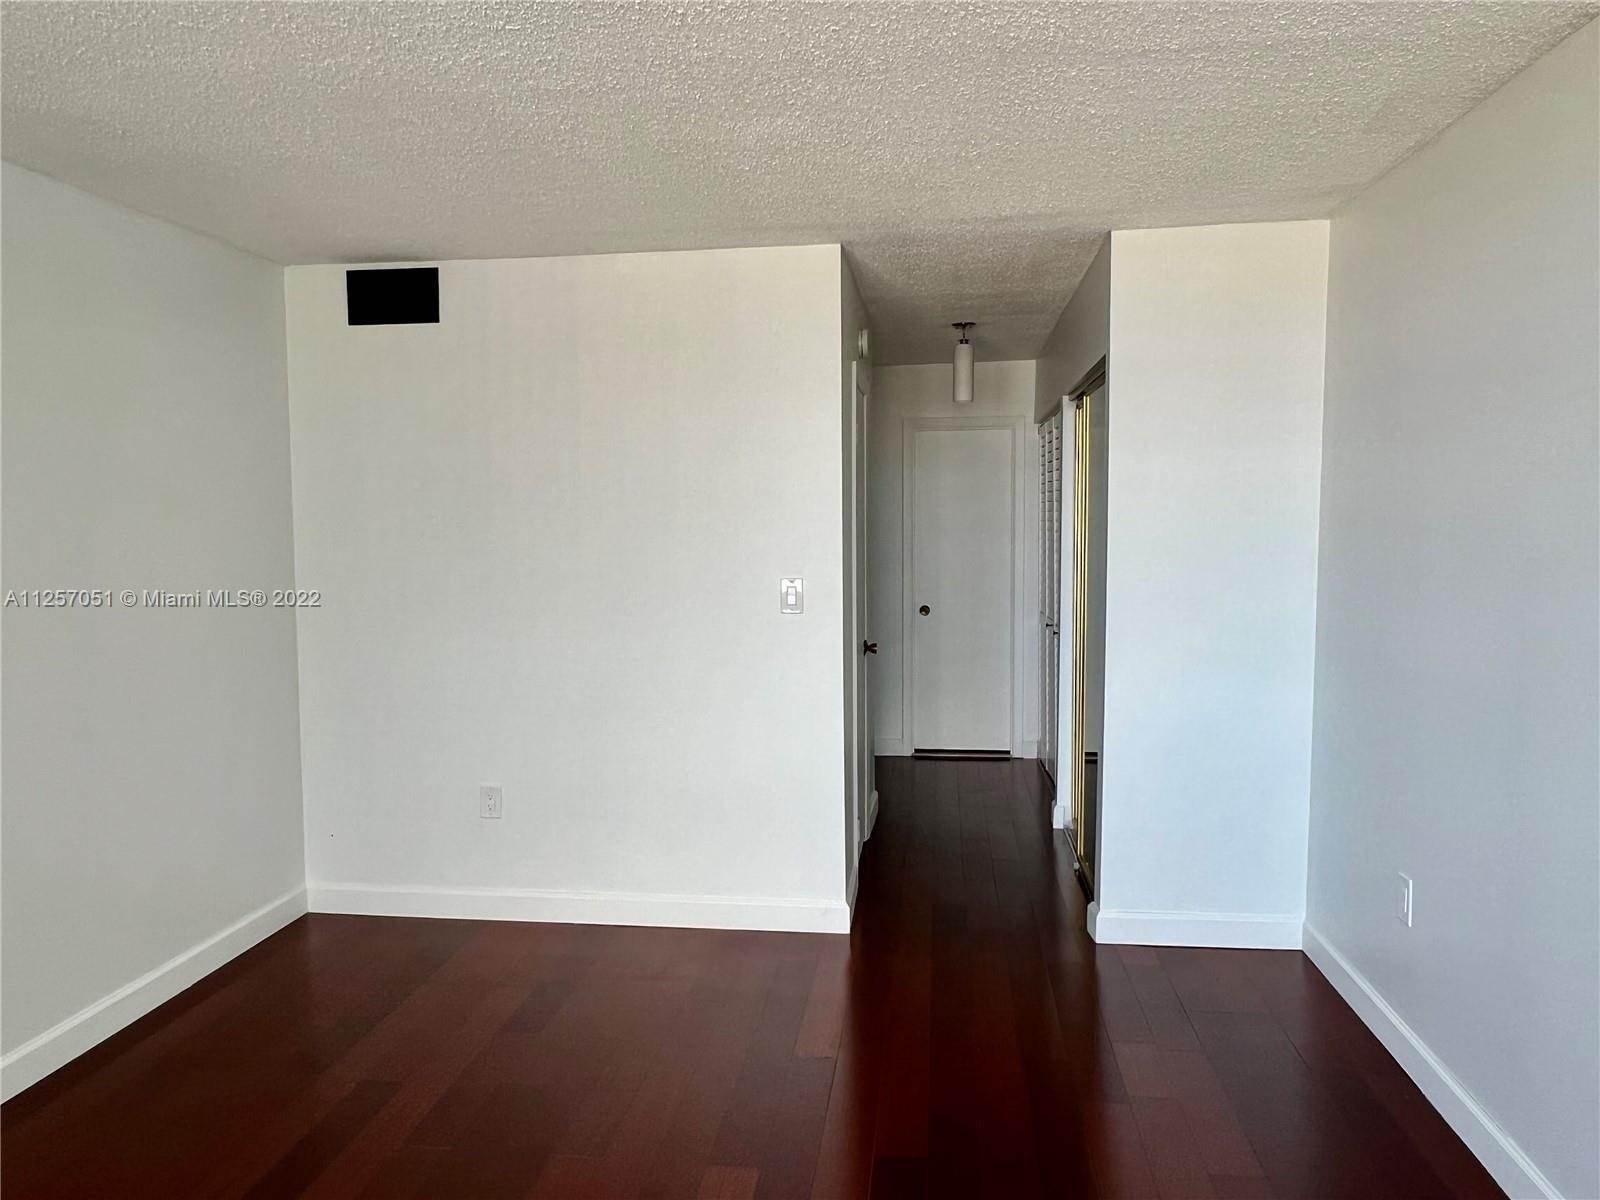 12. Condominium for Sale at Aventura, FL 33160